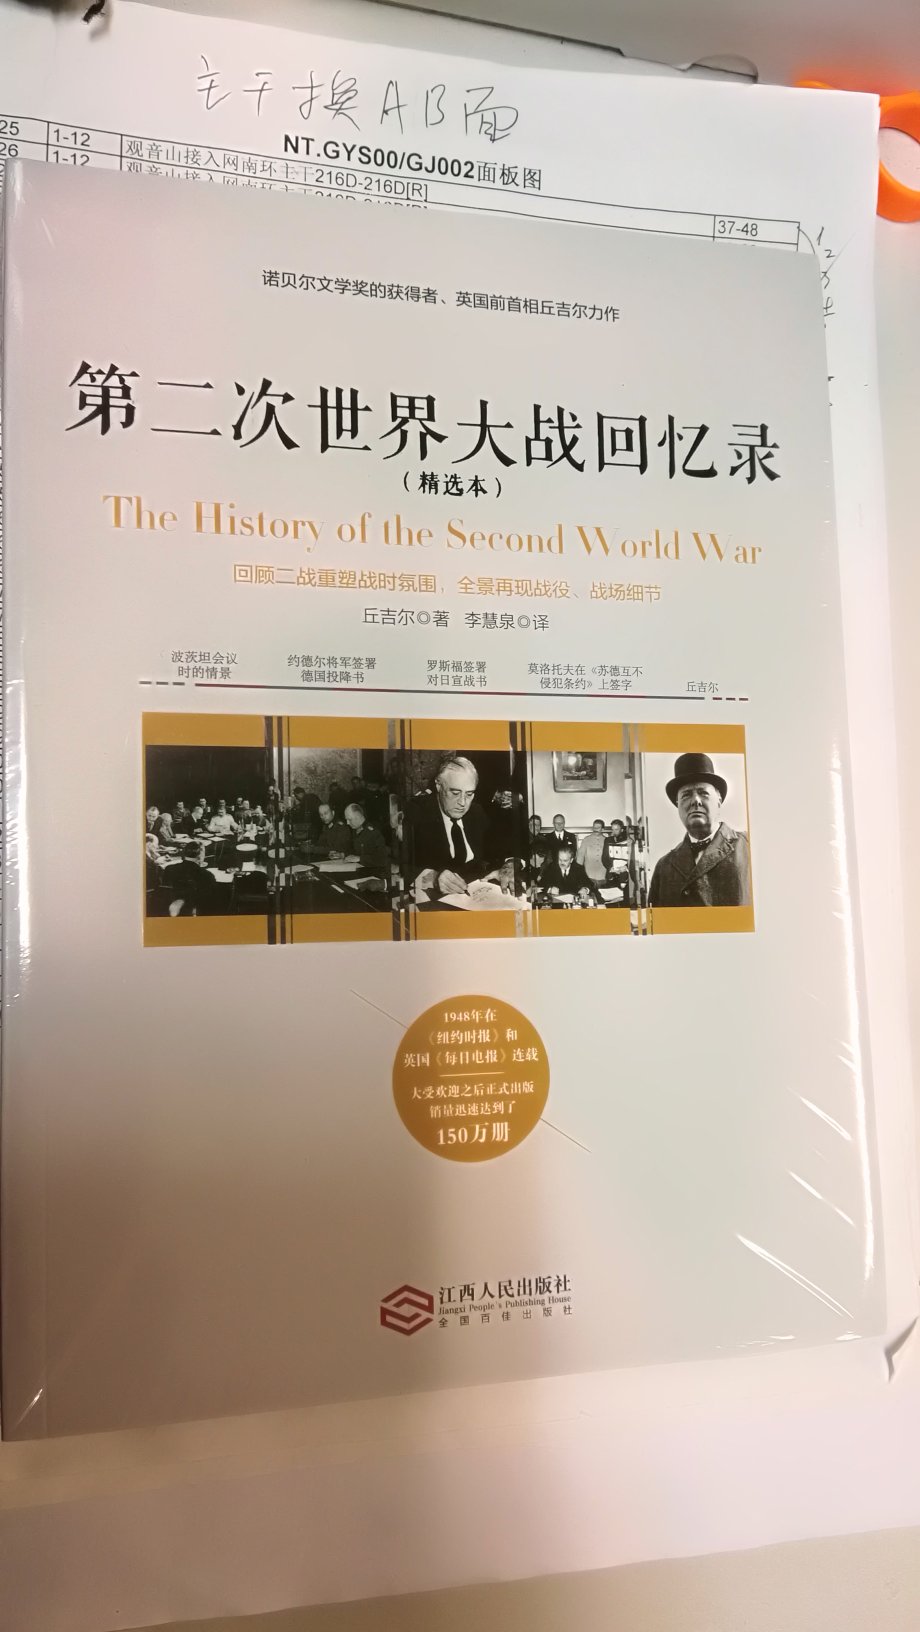 给我自己买的一本书，让我了解二战的历程